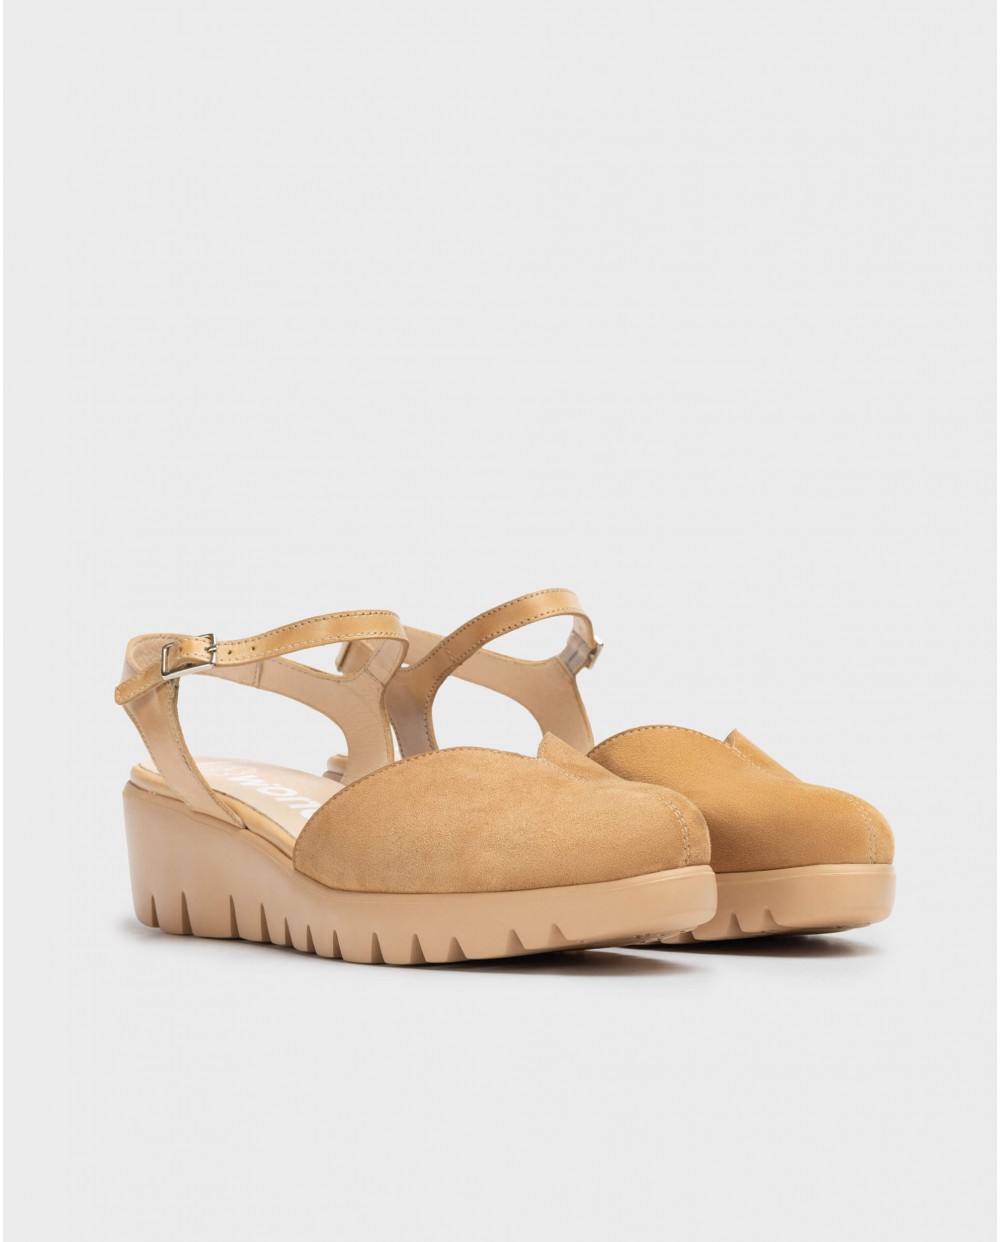 Wonders-Pre-Spring-Brown Caravaca Sandal